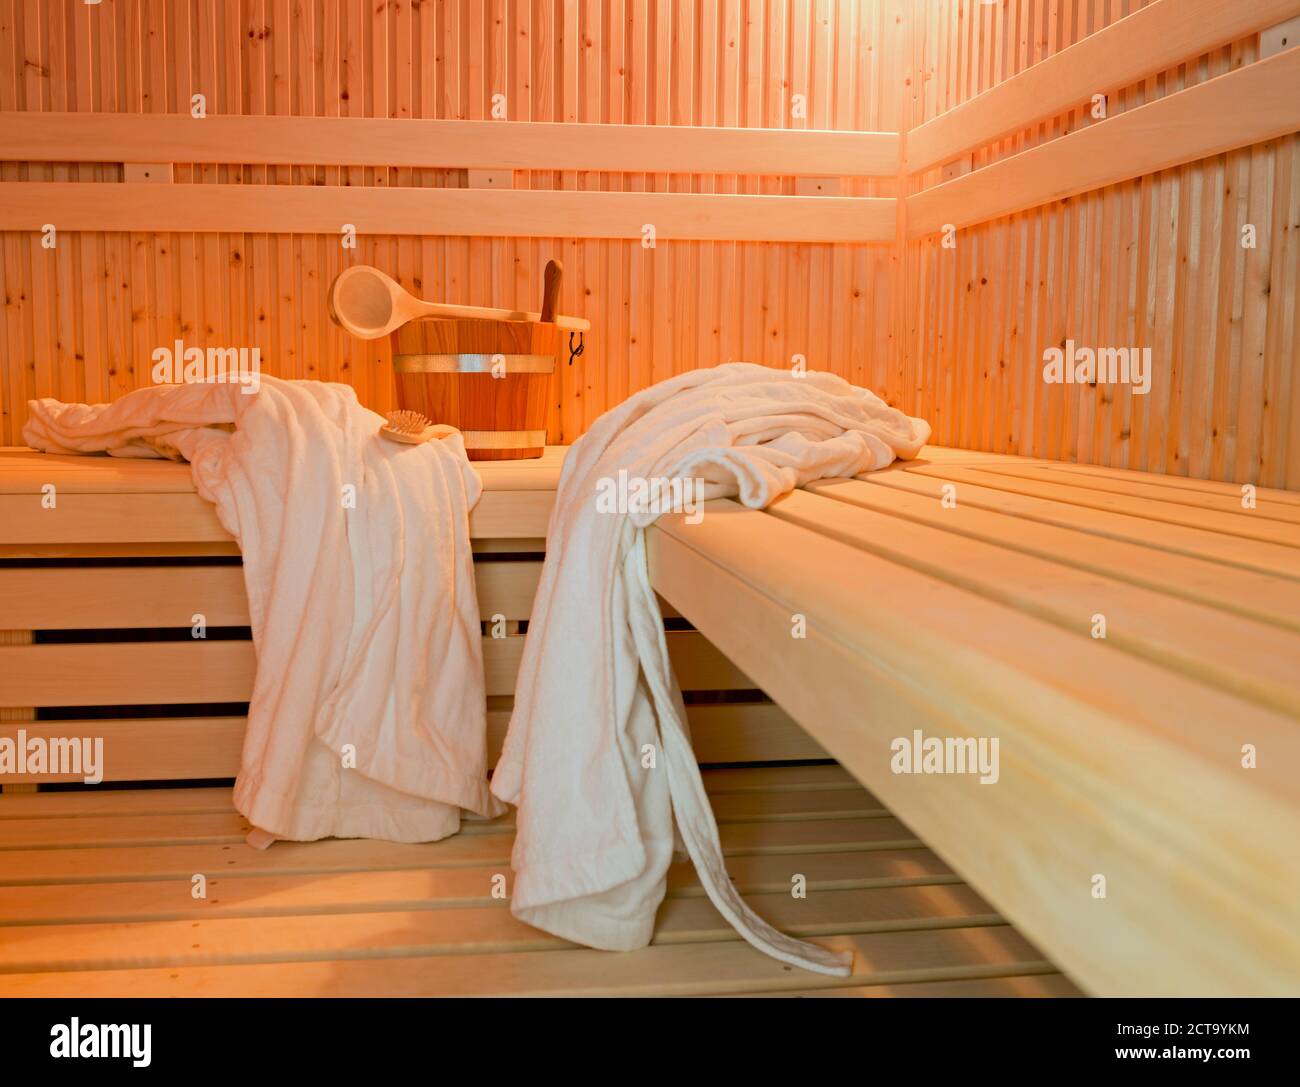 Alemania, Aquisgrán, sauna, bancos de madera, batas de baño, cepillo y bañera Foto de stock